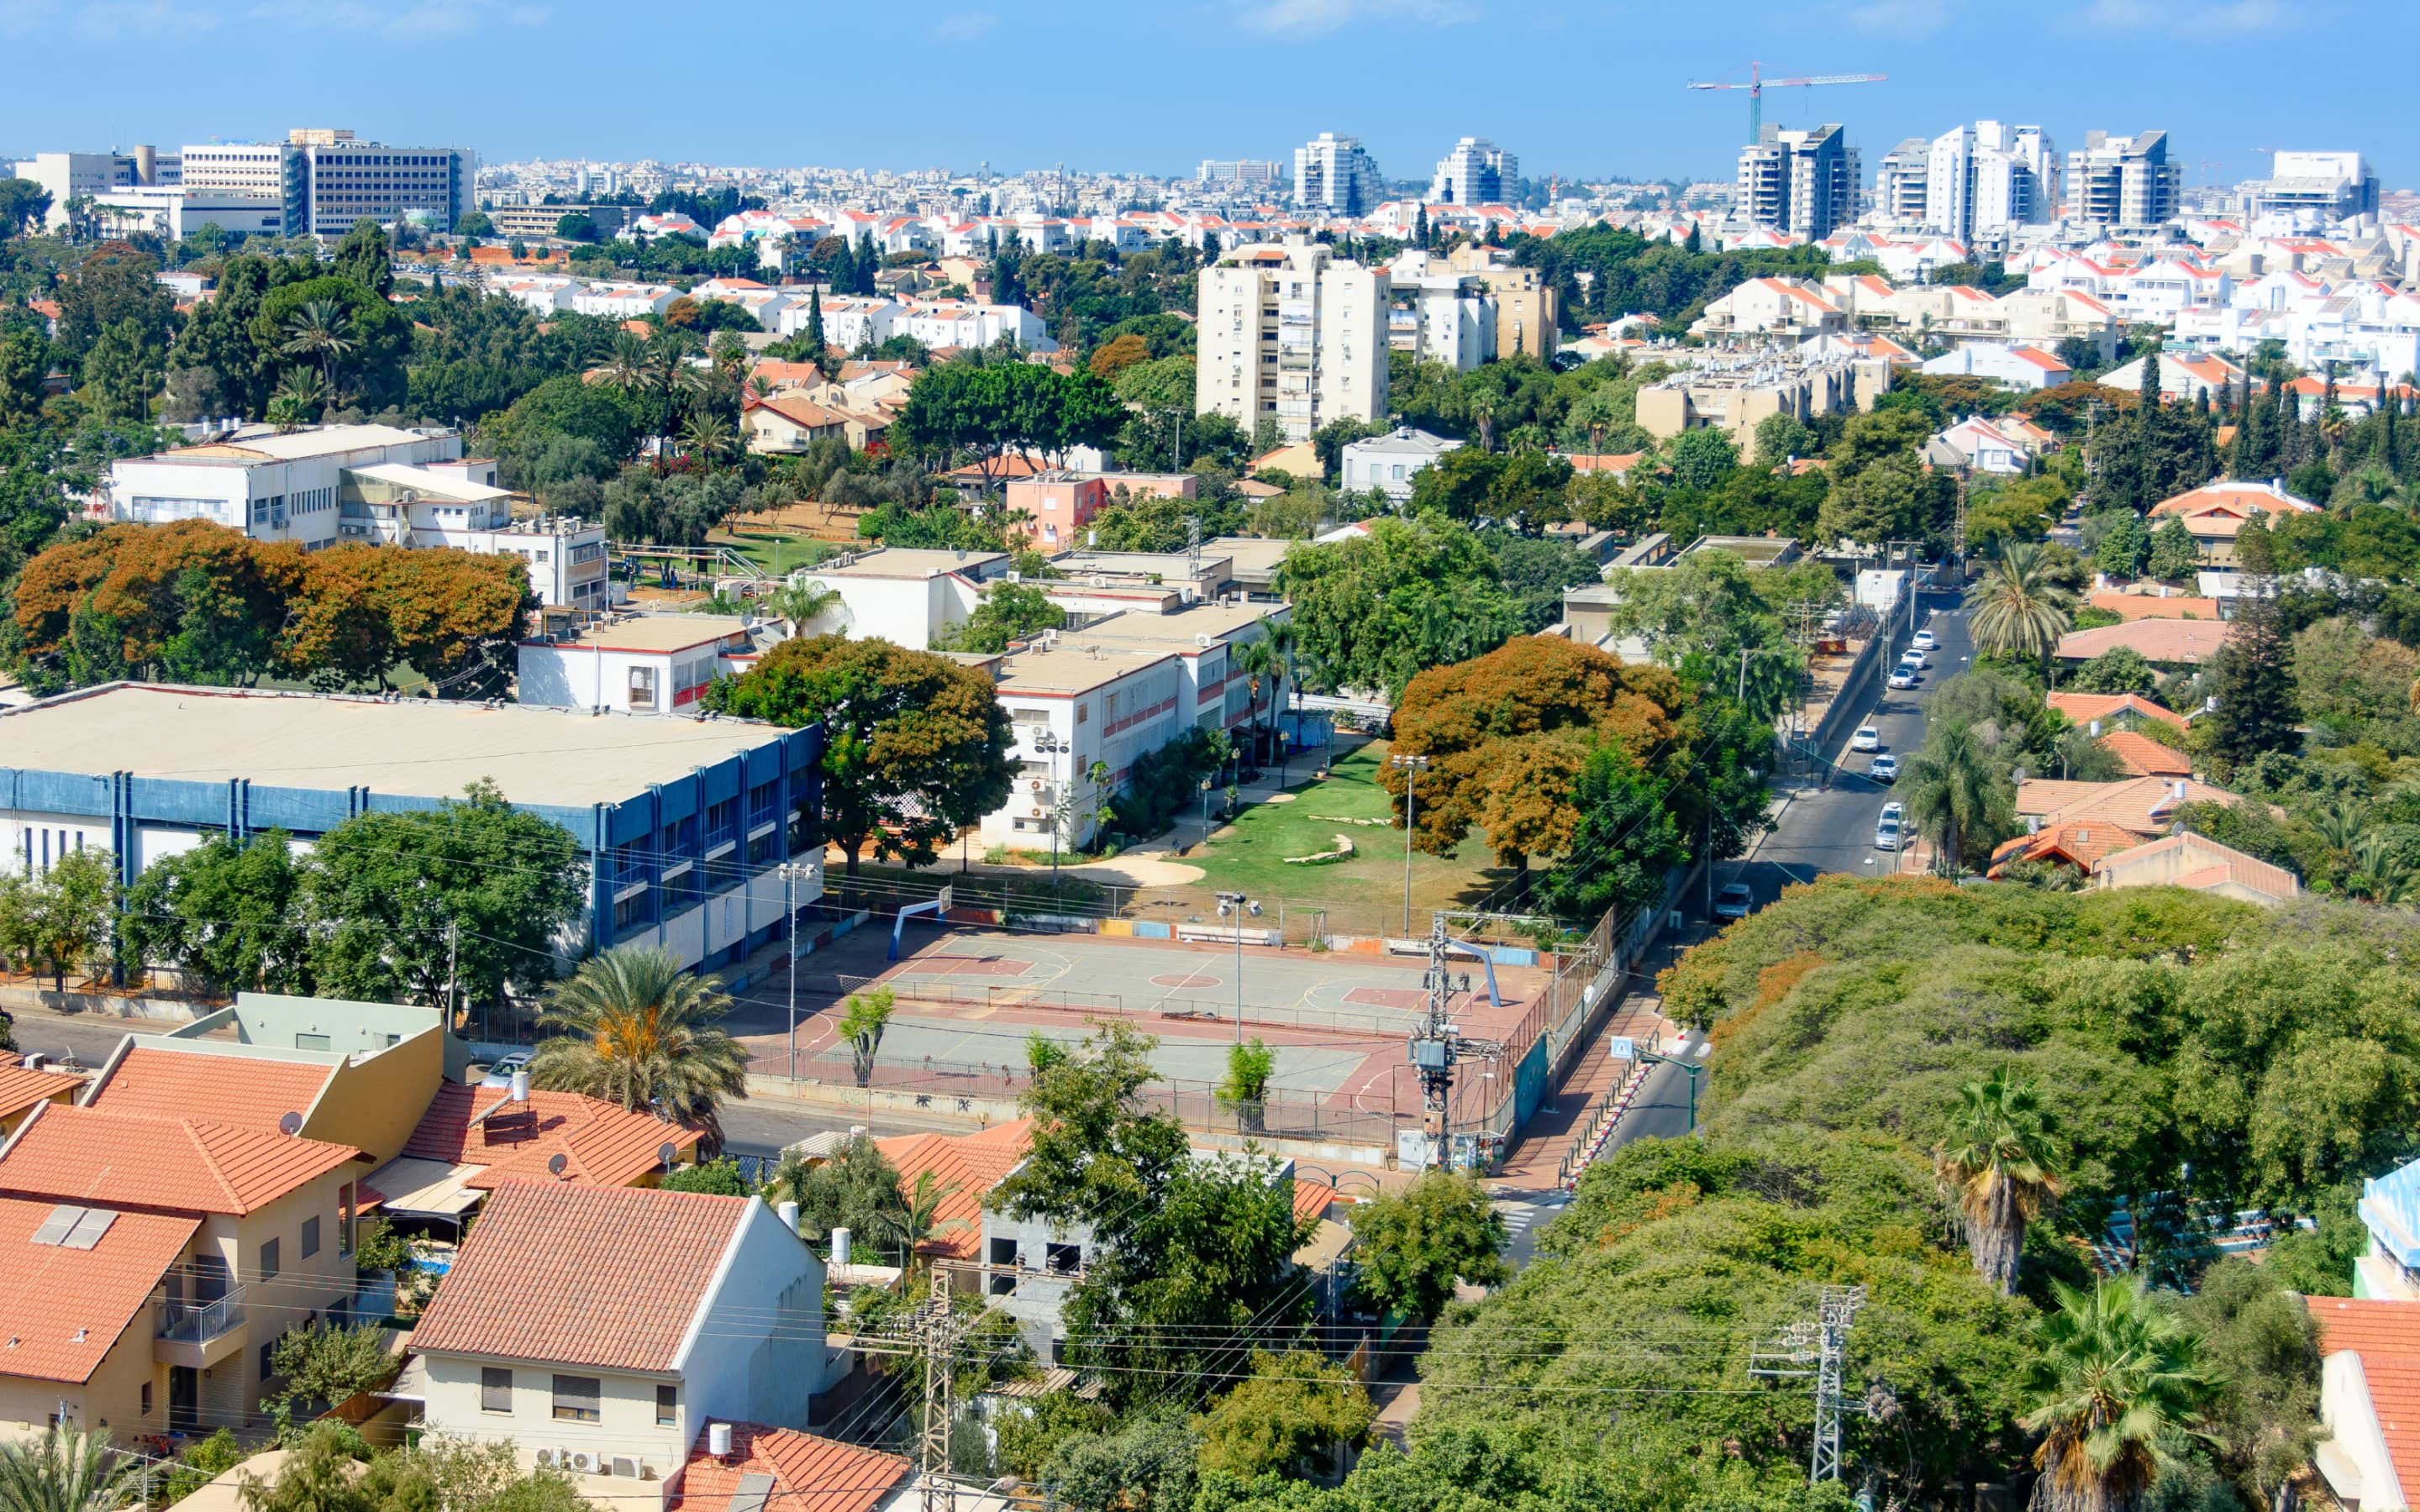 Ra’anana, Israel’s Model City